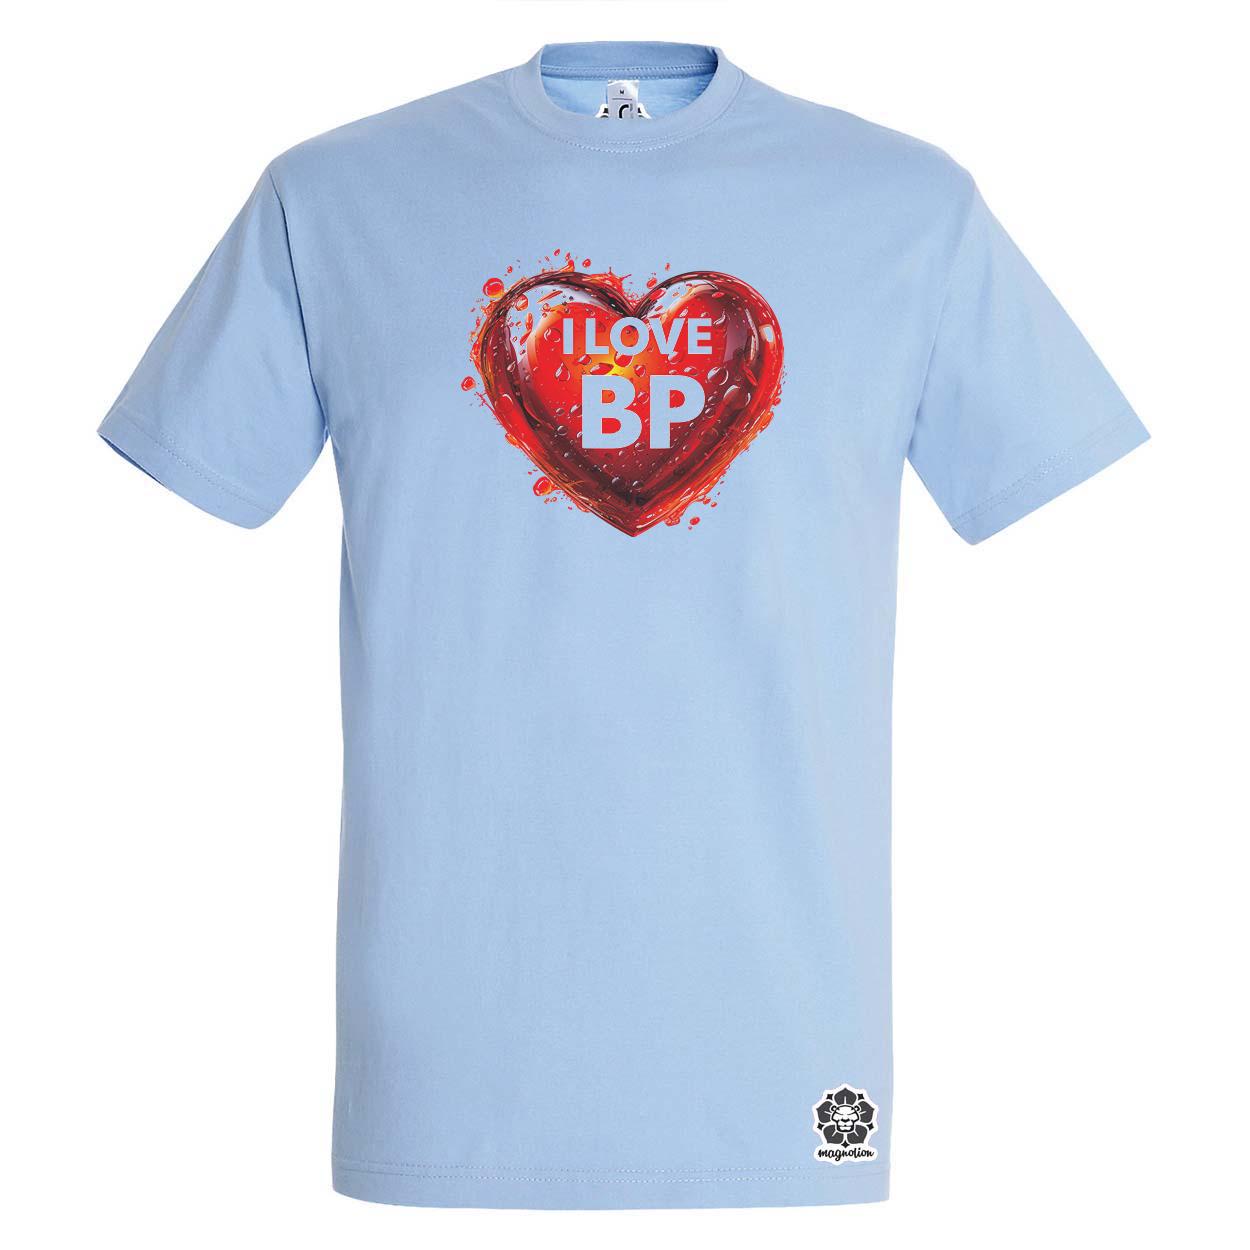 Love BP v14